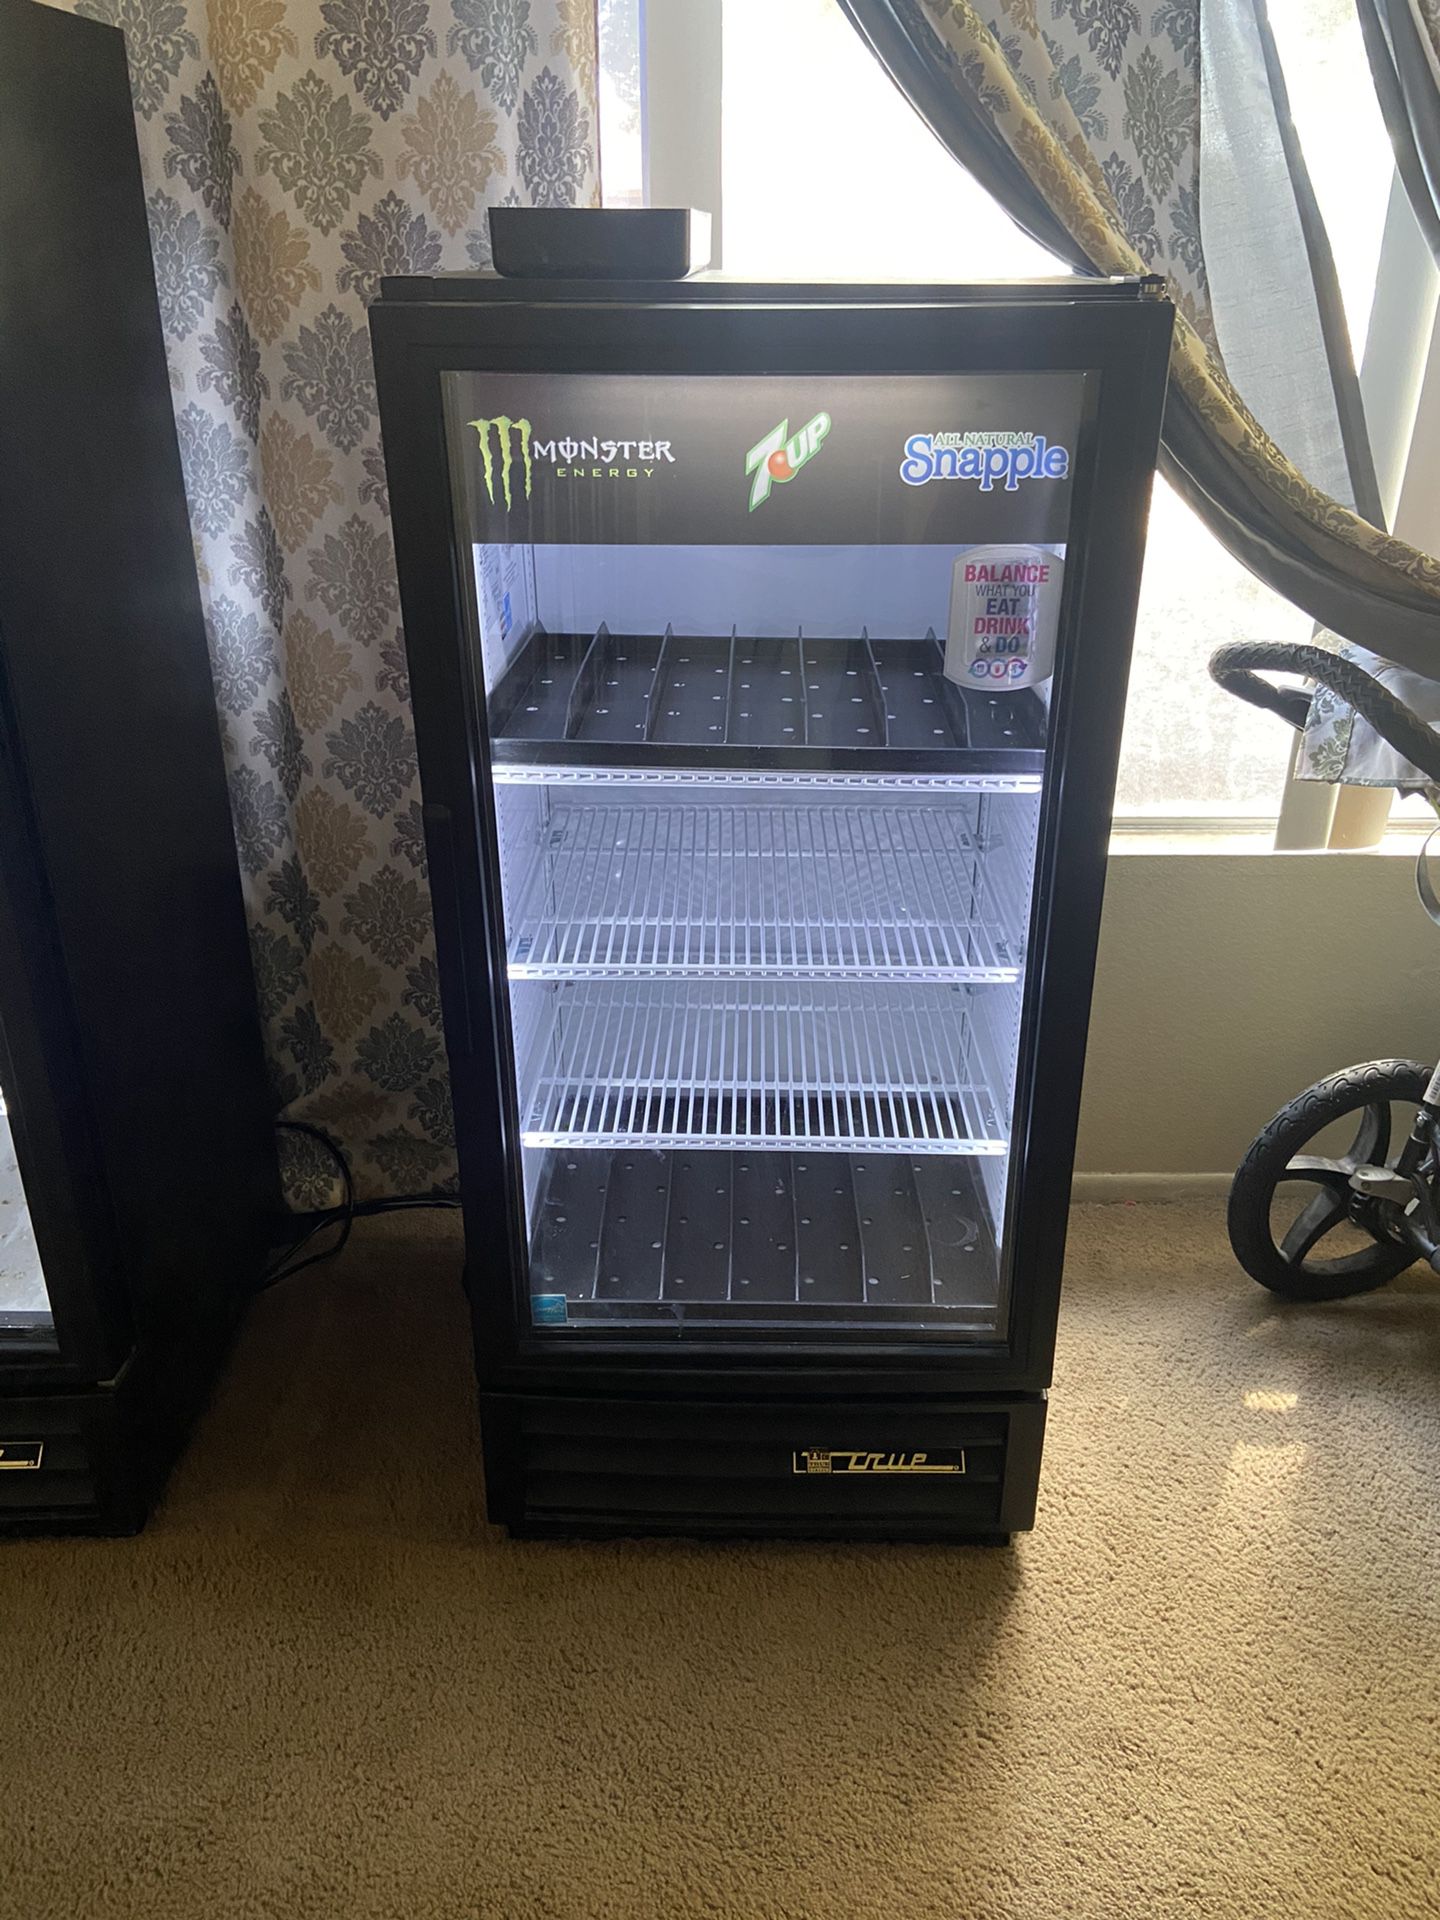 True beverage refrigerator